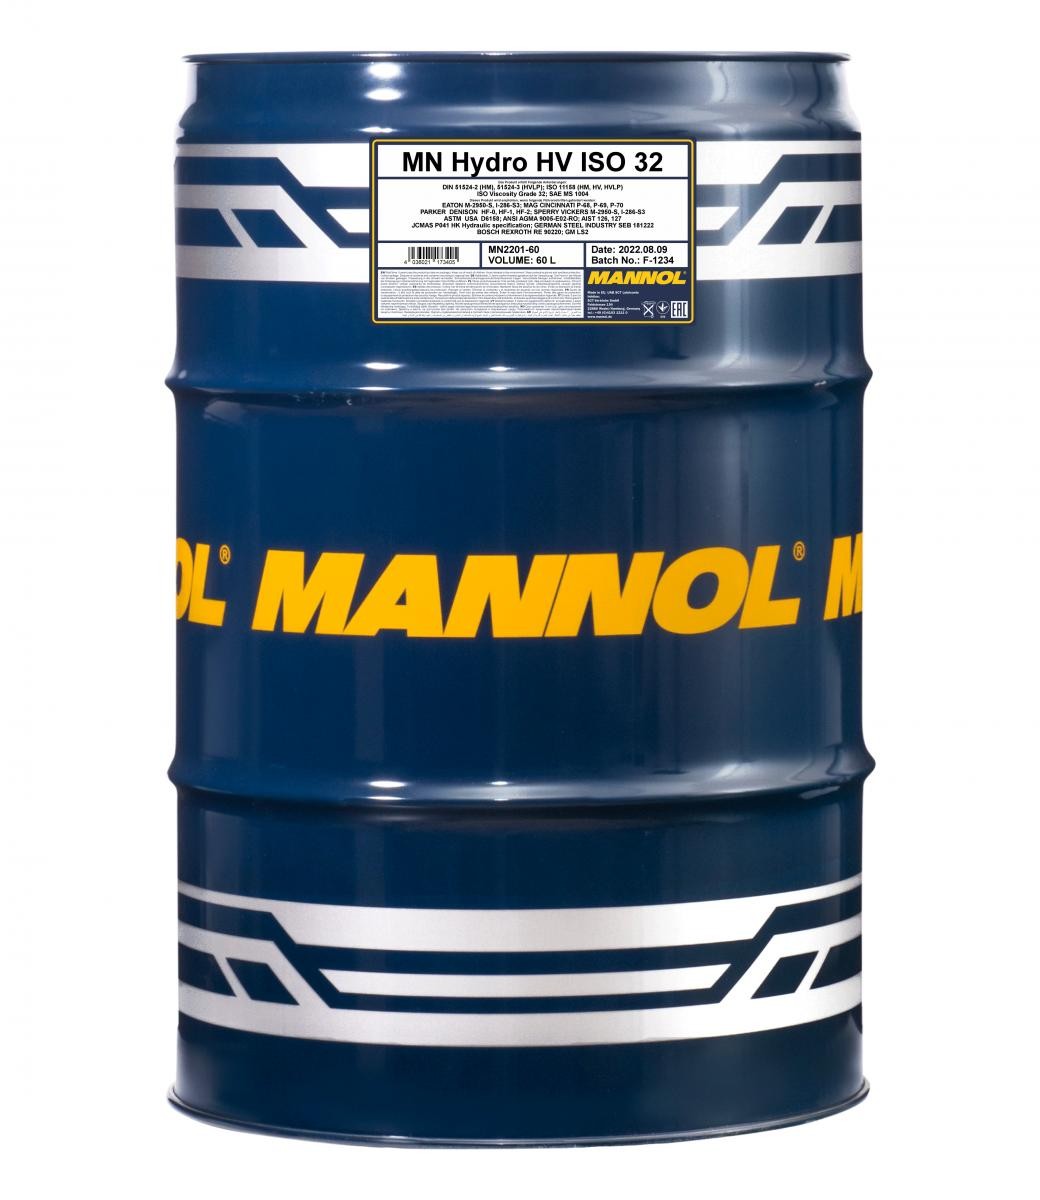 MANNOL Hydro HV ISO 32 MN2201-60 Central Hydraulic Oil